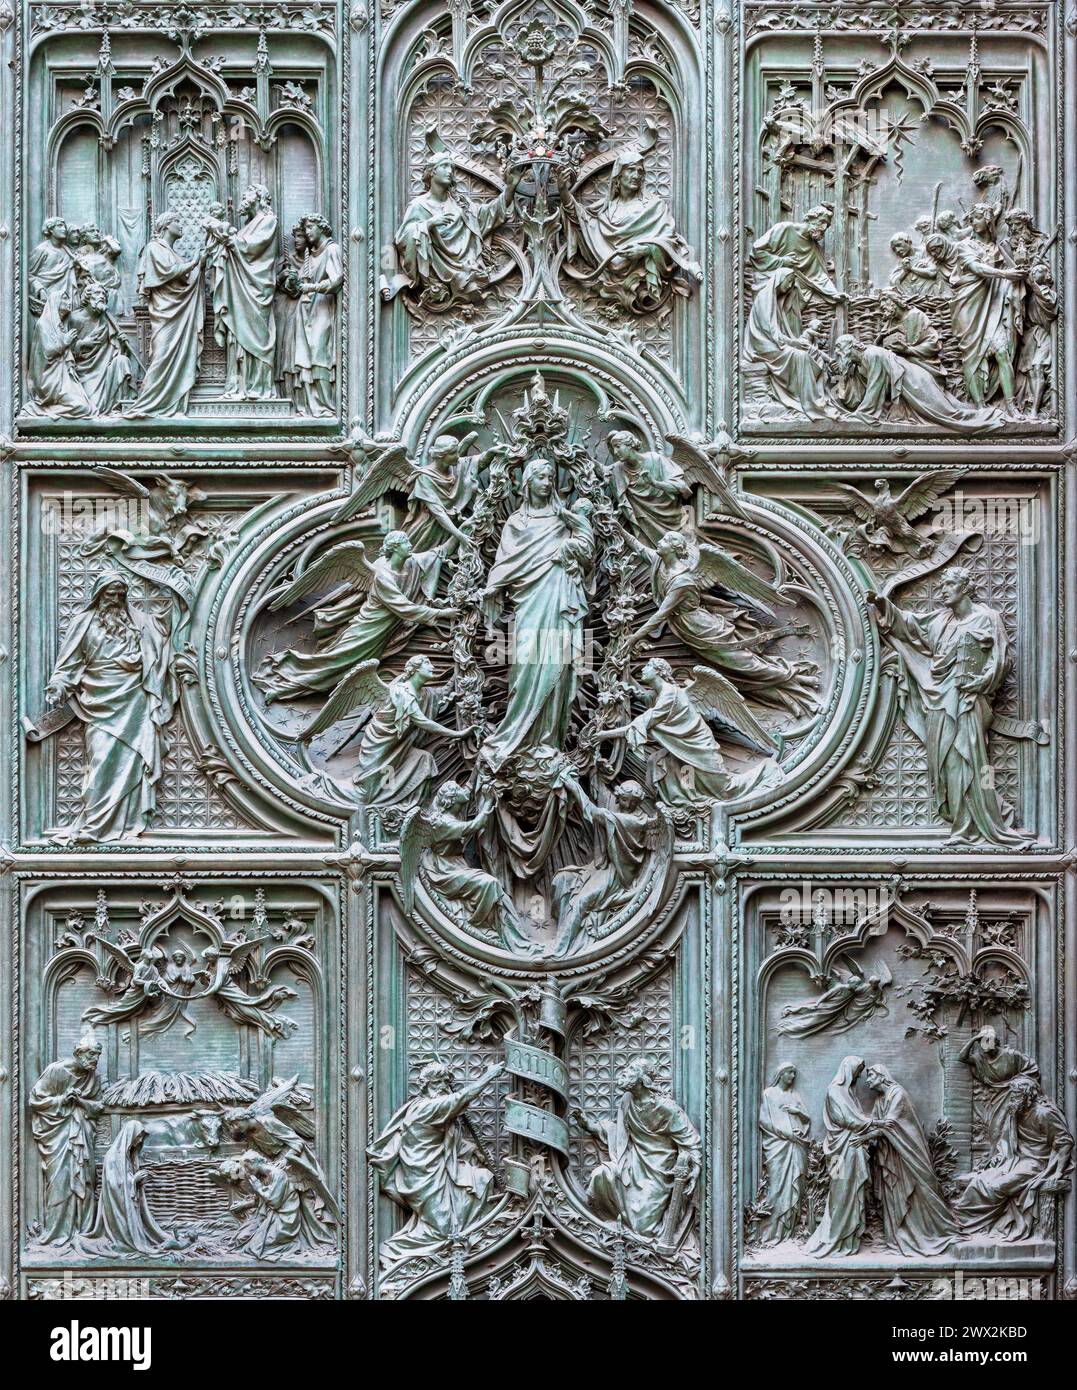 MAILAND, ITALIEN - 16. SEPTEMBER 2024: Das Detail aus dem Bronzetor der Kathedrale - Jungfrau Maria mit den Engeln von Ludovico Pogliaghi (1906). Stockfoto